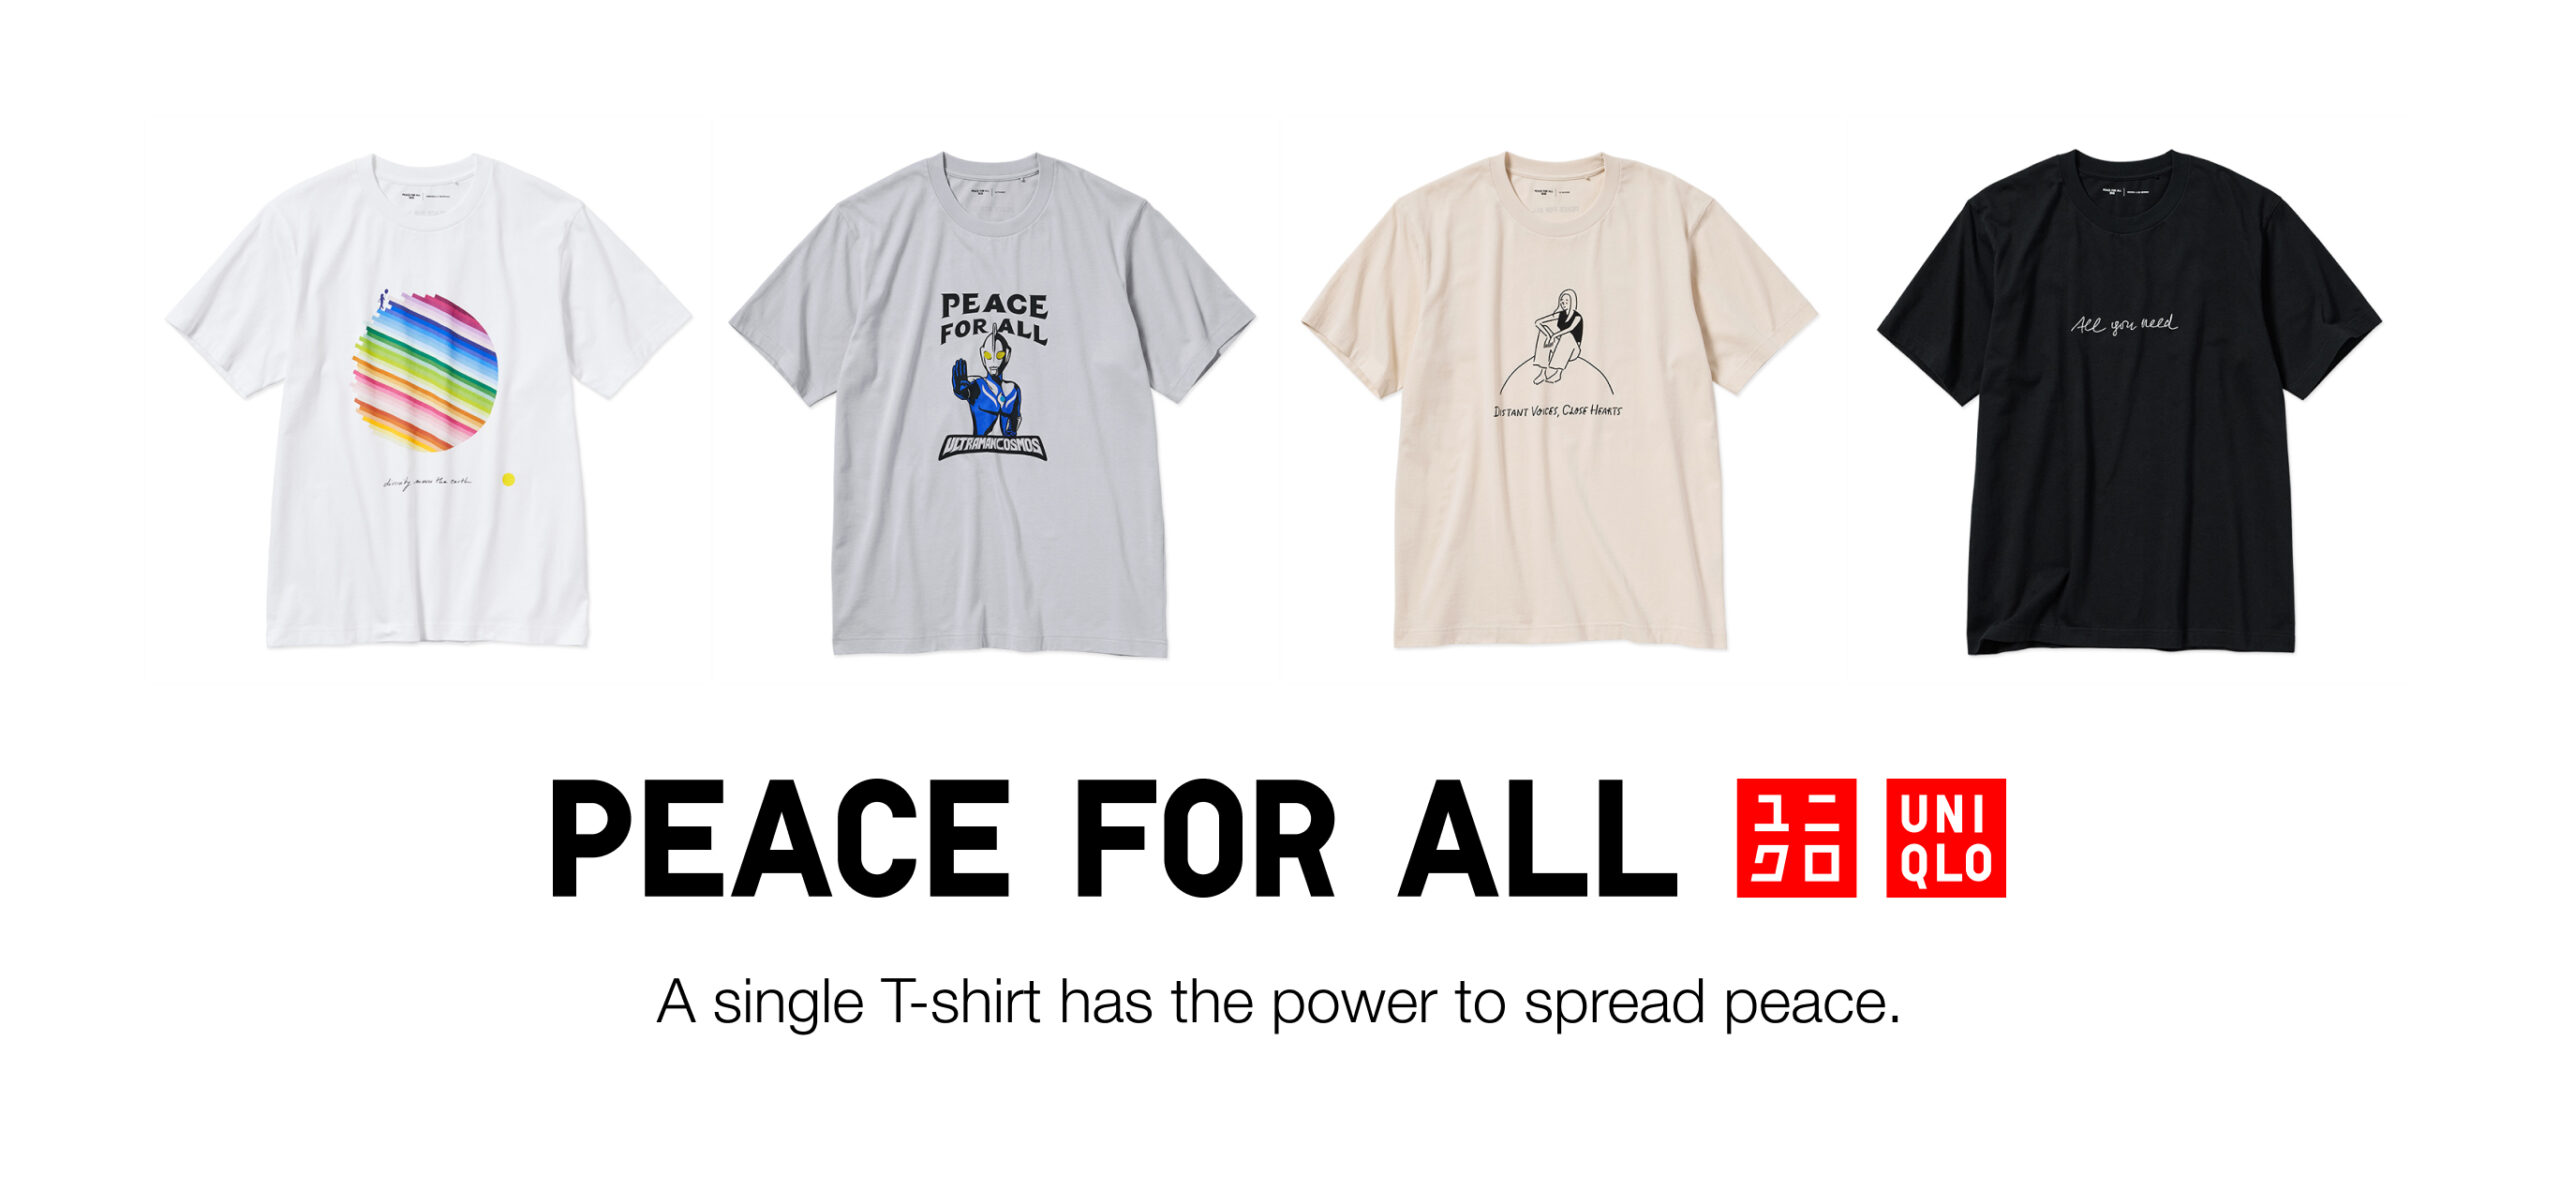 ยูนิโคล่เปิดตัวคอลเลคชันฮอลิเดย์ โปรเจกต์เสื้อยืดการกุศล PEACE FOR ALL